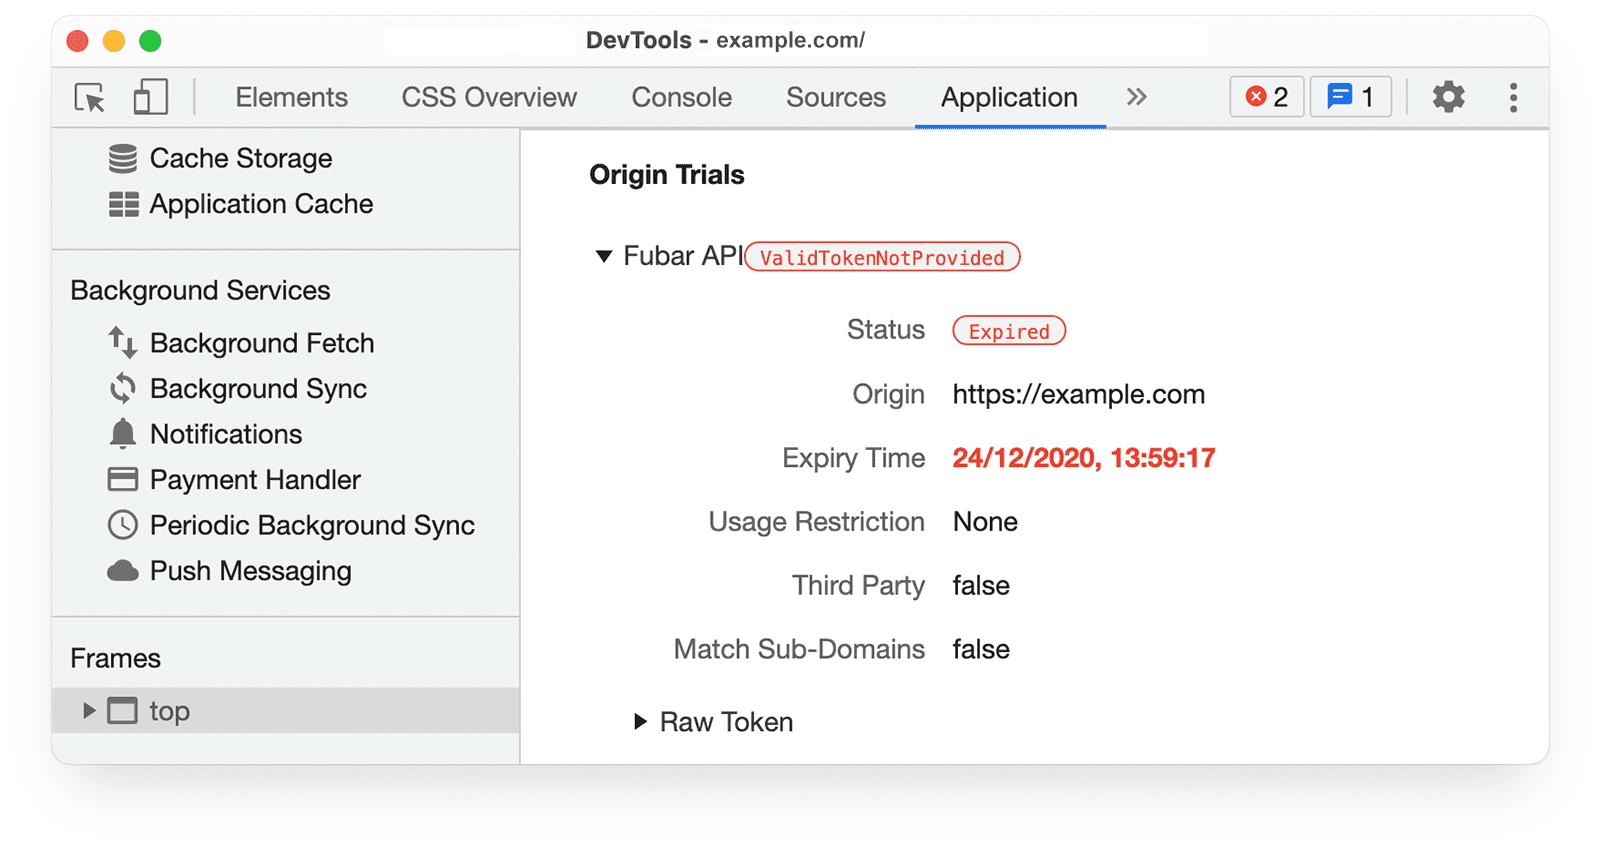 ऐप्लिकेशन पैनल में Chrome DevTools 
के ऑरिजिन ट्रायल की जानकारी, जिसमें खत्म हो चुका टोकन दिखाया गया है